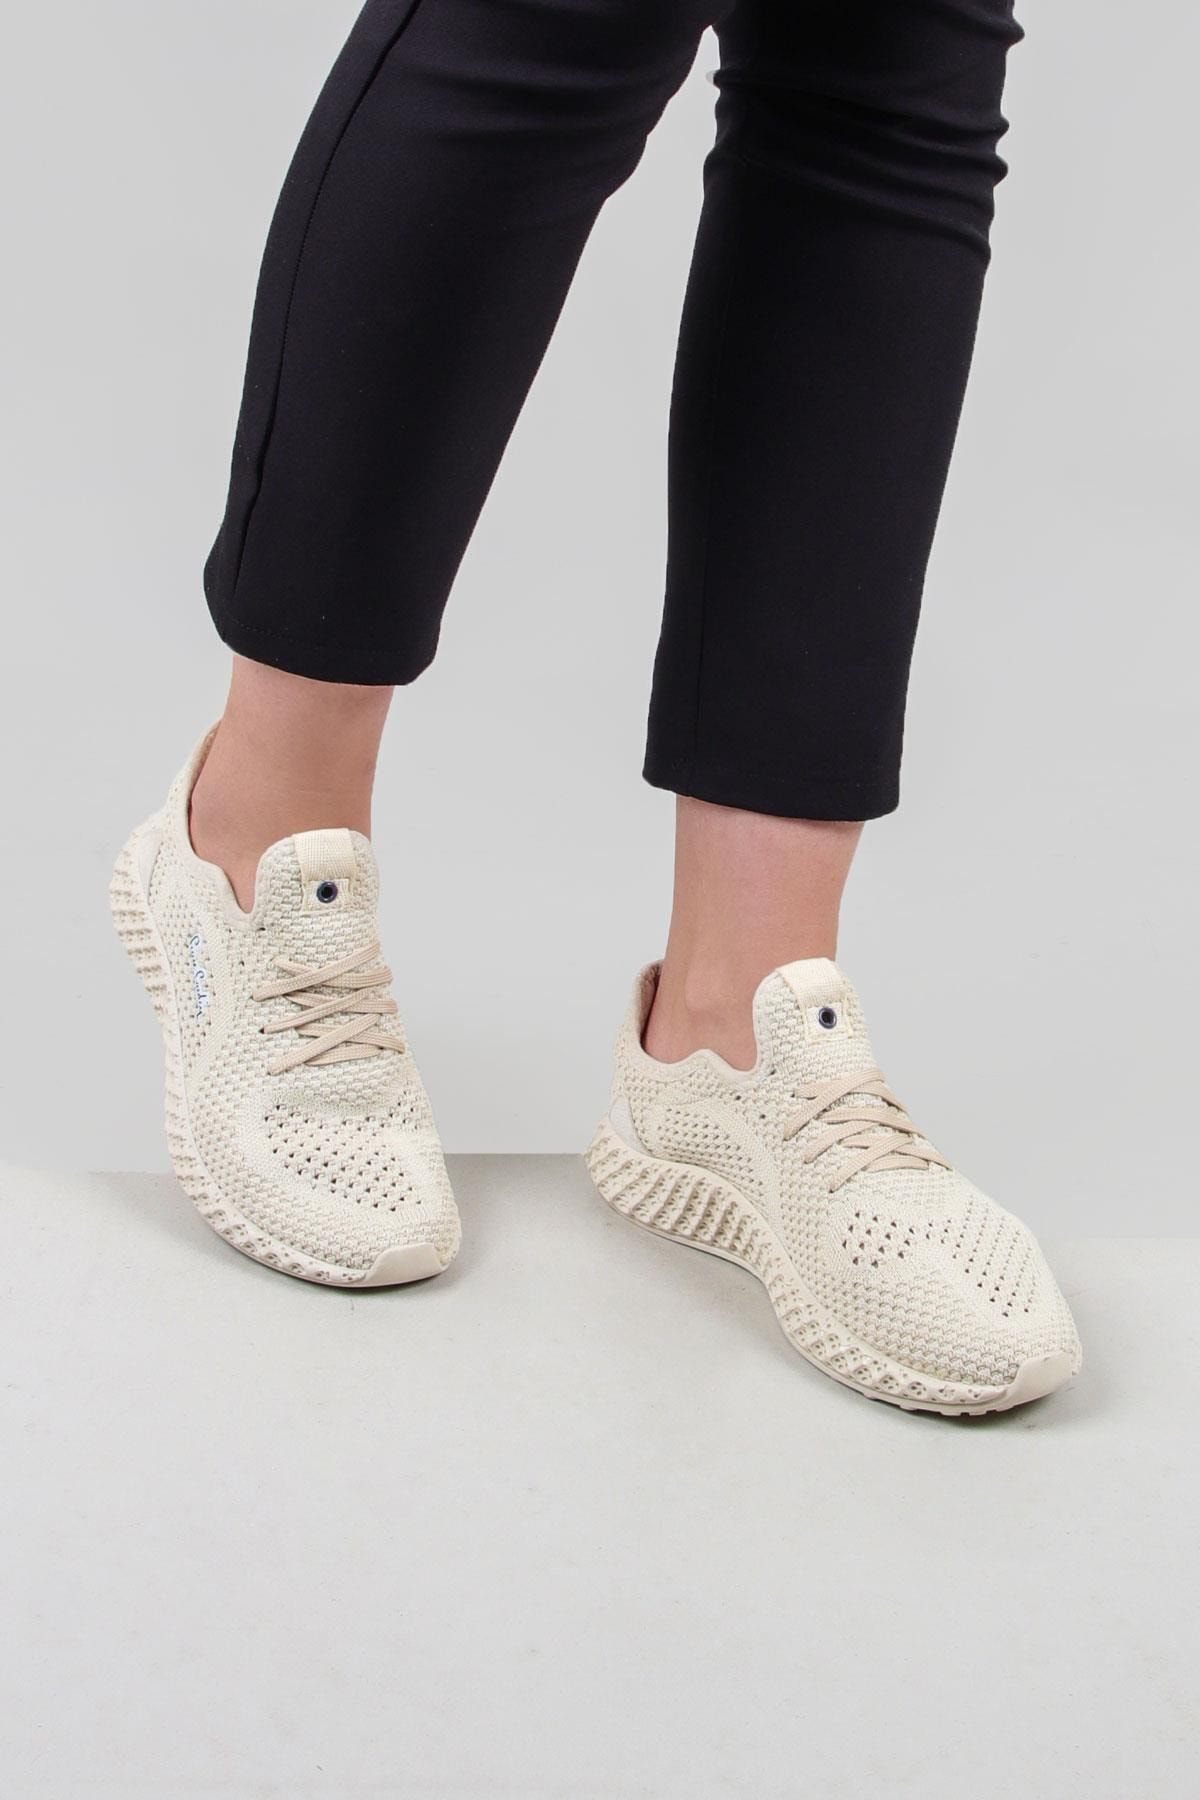 Pierre Cardin Kadın Günlük Sneaker Ayakkabı (pc-30680)